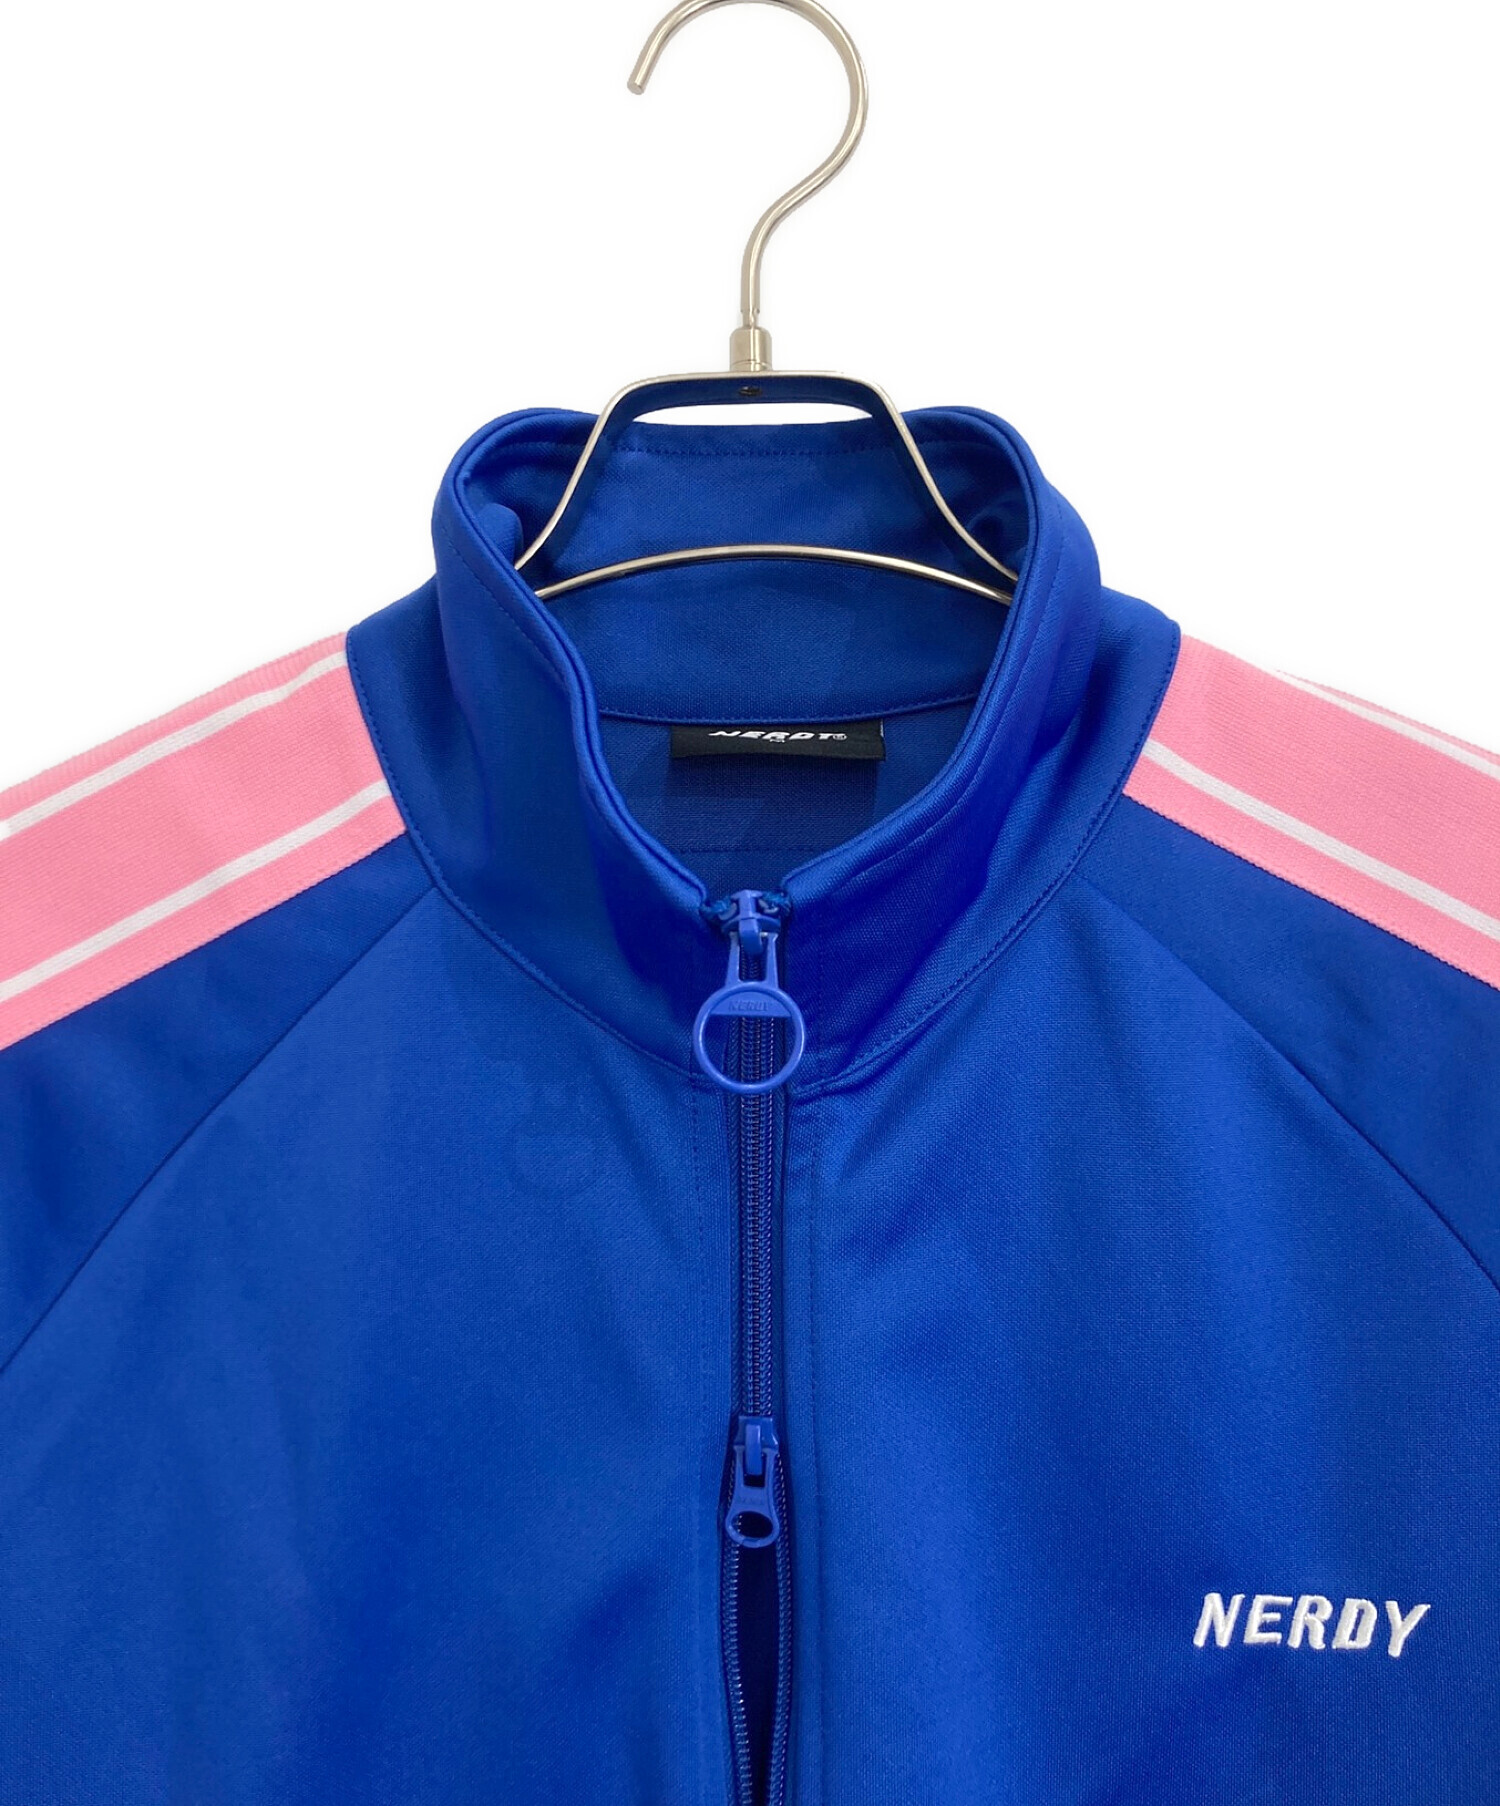 NERDY (ノルディ) NERDY(ノルディ) ジップアップ パレット トラック トップ ブルー×ピンク サイズ:M